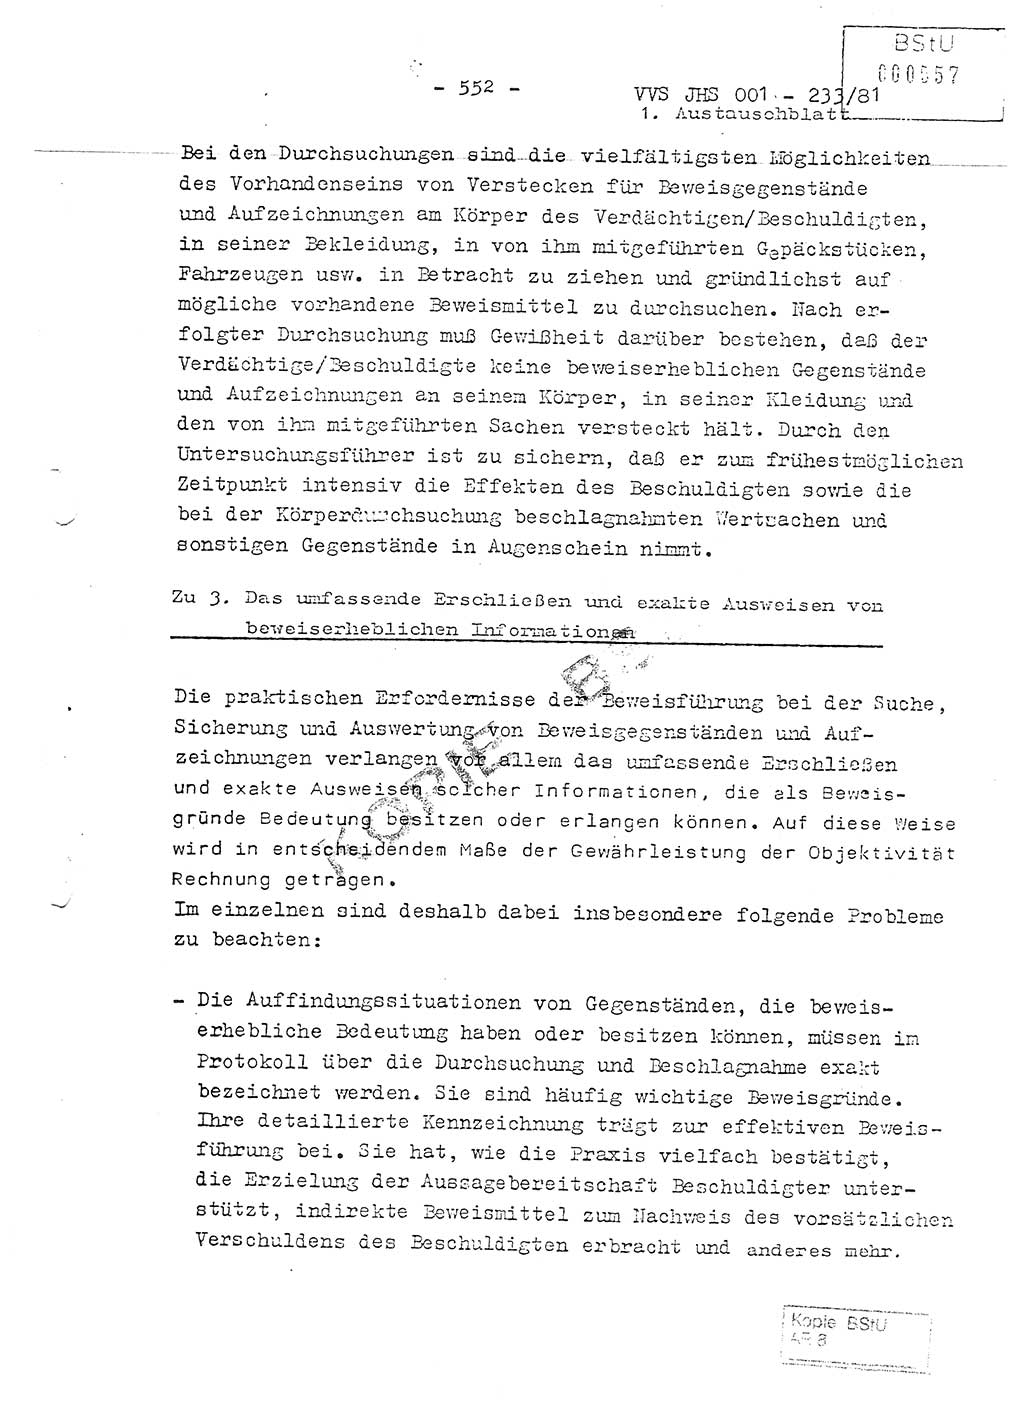 Dissertation Oberstleutnant Horst Zank (JHS), Oberstleutnant Dr. Karl-Heinz Knoblauch (JHS), Oberstleutnant Gustav-Adolf Kowalewski (HA Ⅸ), Oberstleutnant Wolfgang Plötner (HA Ⅸ), Ministerium für Staatssicherheit (MfS) [Deutsche Demokratische Republik (DDR)], Juristische Hochschule (JHS), Vertrauliche Verschlußsache (VVS) o001-233/81, Potsdam 1981, Blatt 552 (Diss. MfS DDR JHS VVS o001-233/81 1981, Bl. 552)